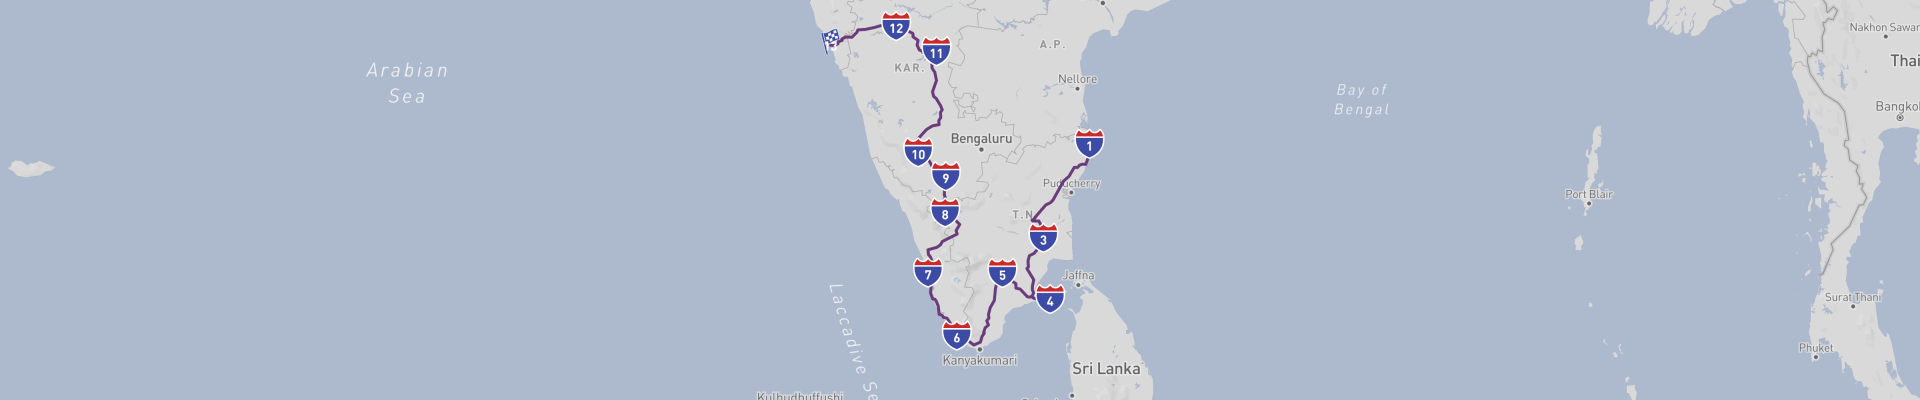 Grand Tour po Indiach Południowych